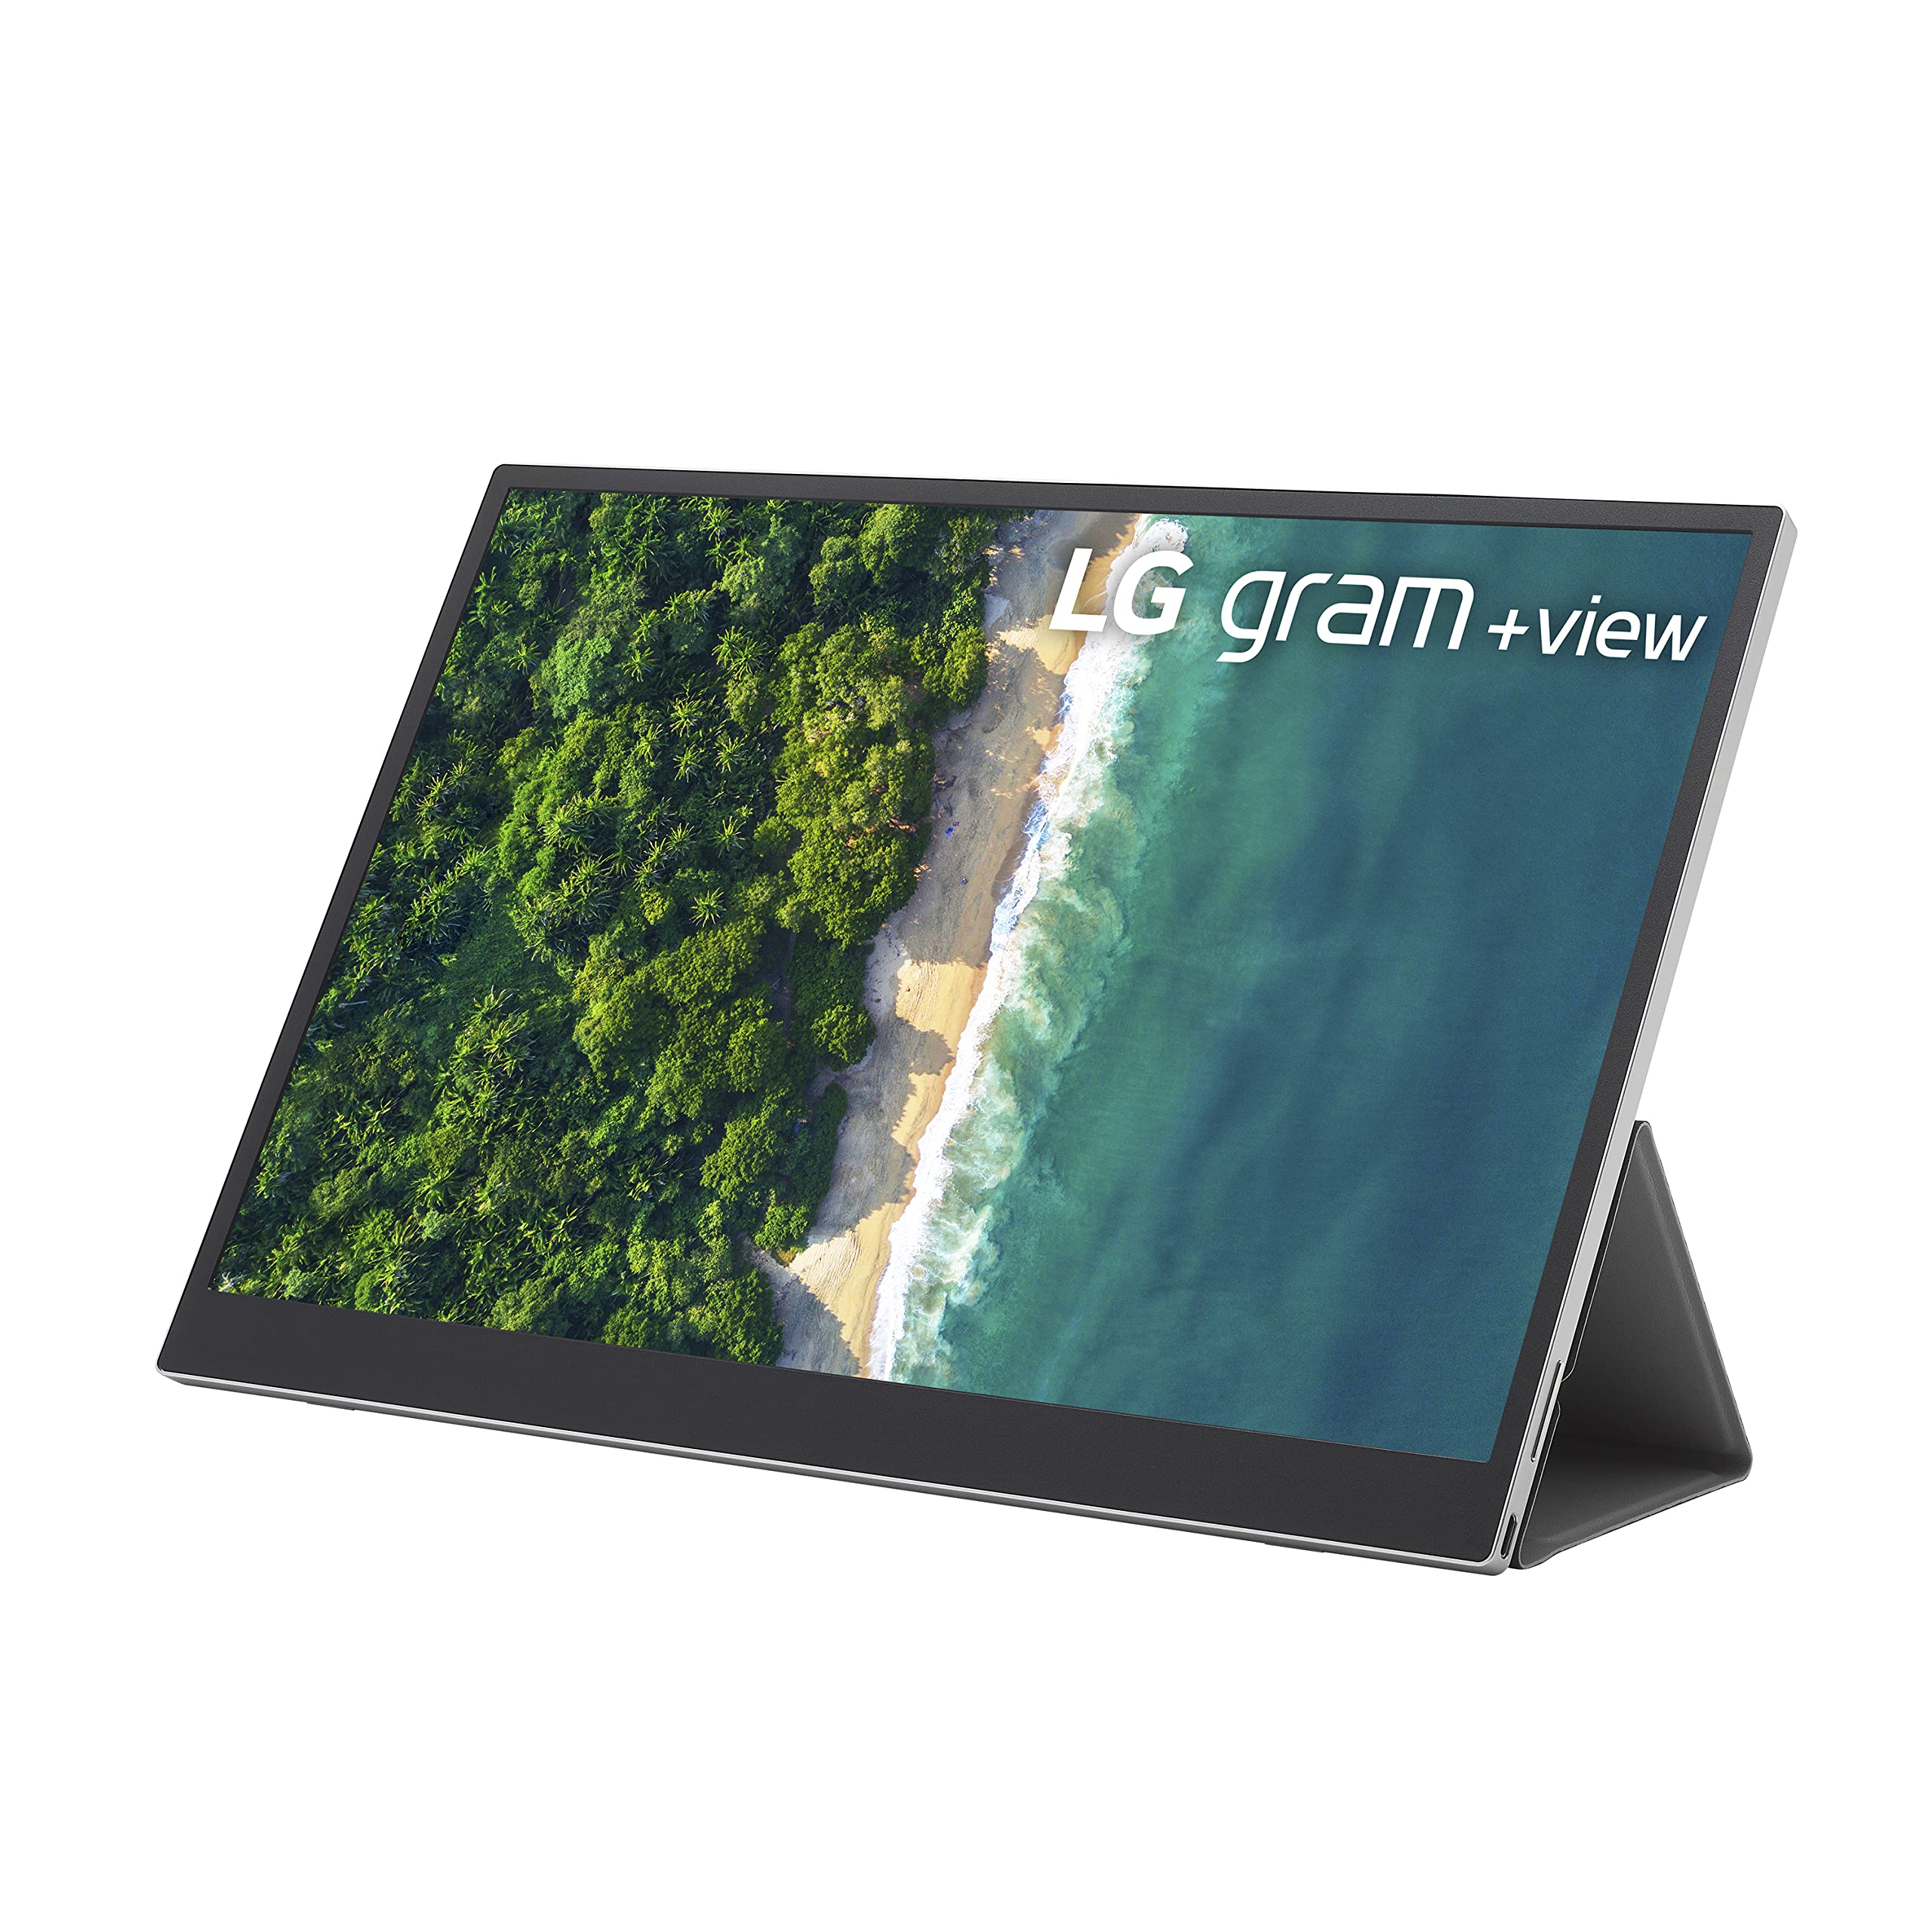  LG Gram +View 16 インチ ポータブル WQXGA (2560 x 1600) IPS モニター、16:10 アスペクト比、DCI-P3 99% カラー、USB-C 接続、横向きおよび縦向き、フォリオ カバー...